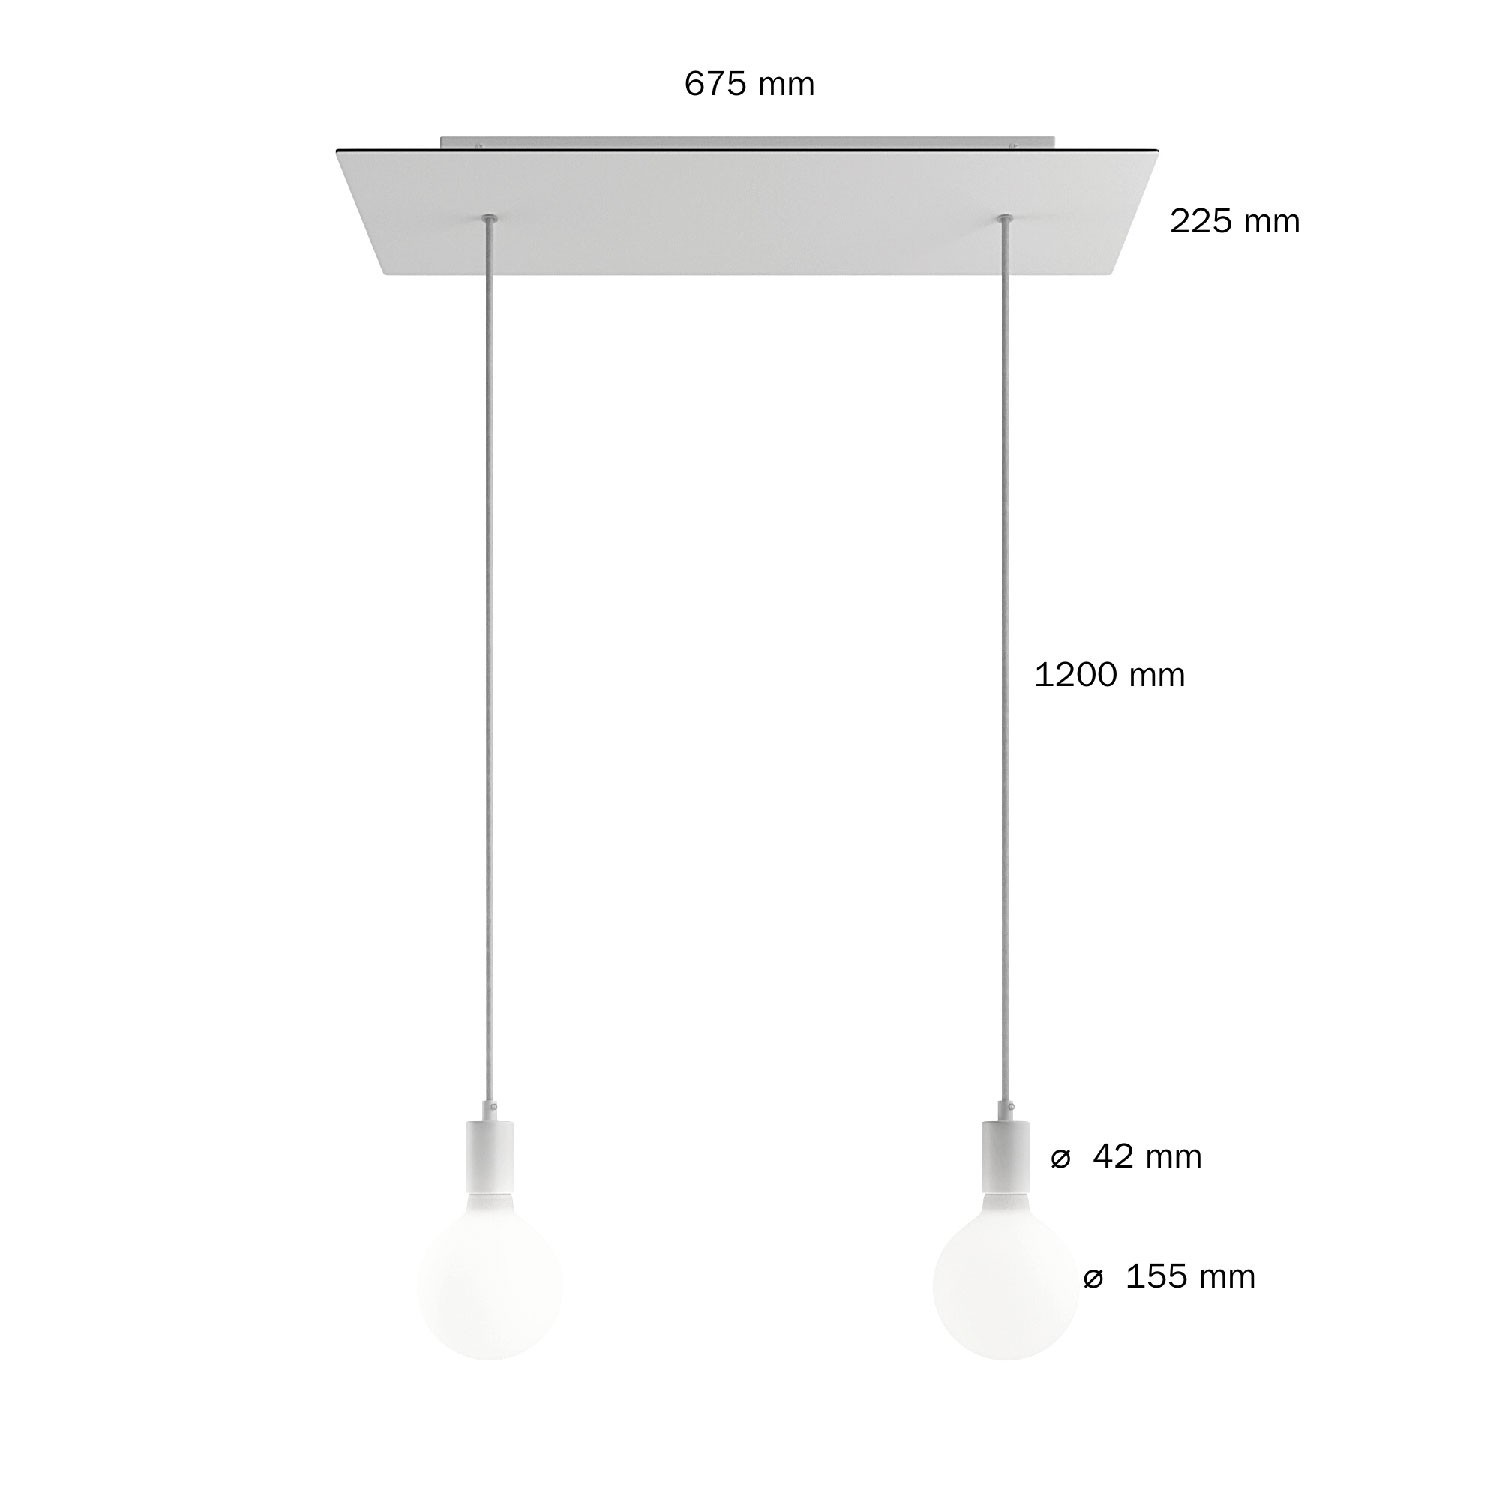 2 lichts-hanglamp voorzien van XXL rechthoekige Rose-One 675 mm compleet met strijkijzersnoer en metalen afwerking